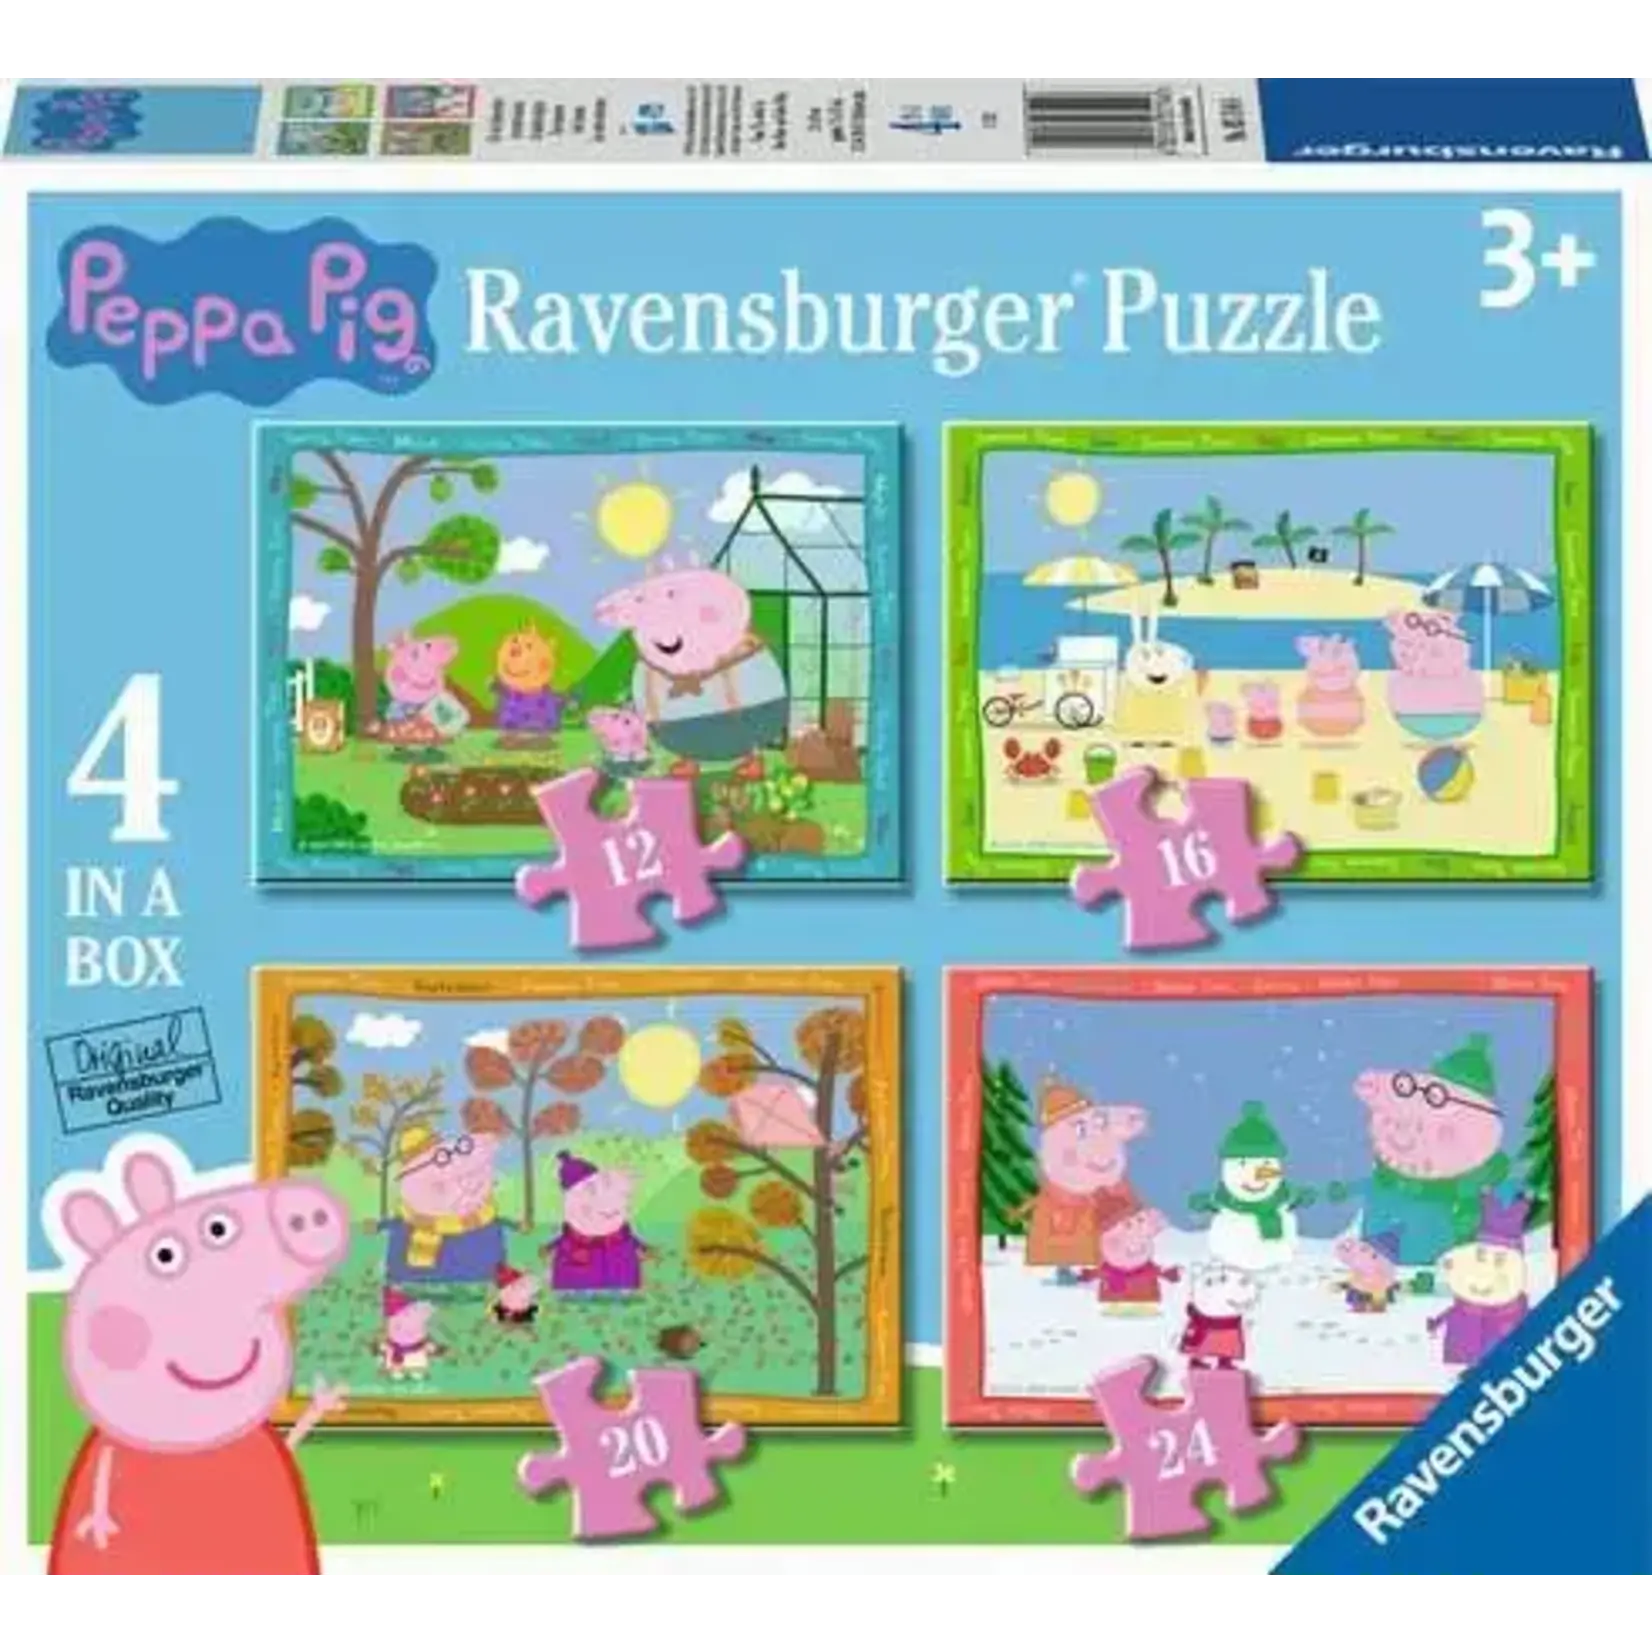 Ravensburger Peppa Pig 4 in a box Puzzles Seasons